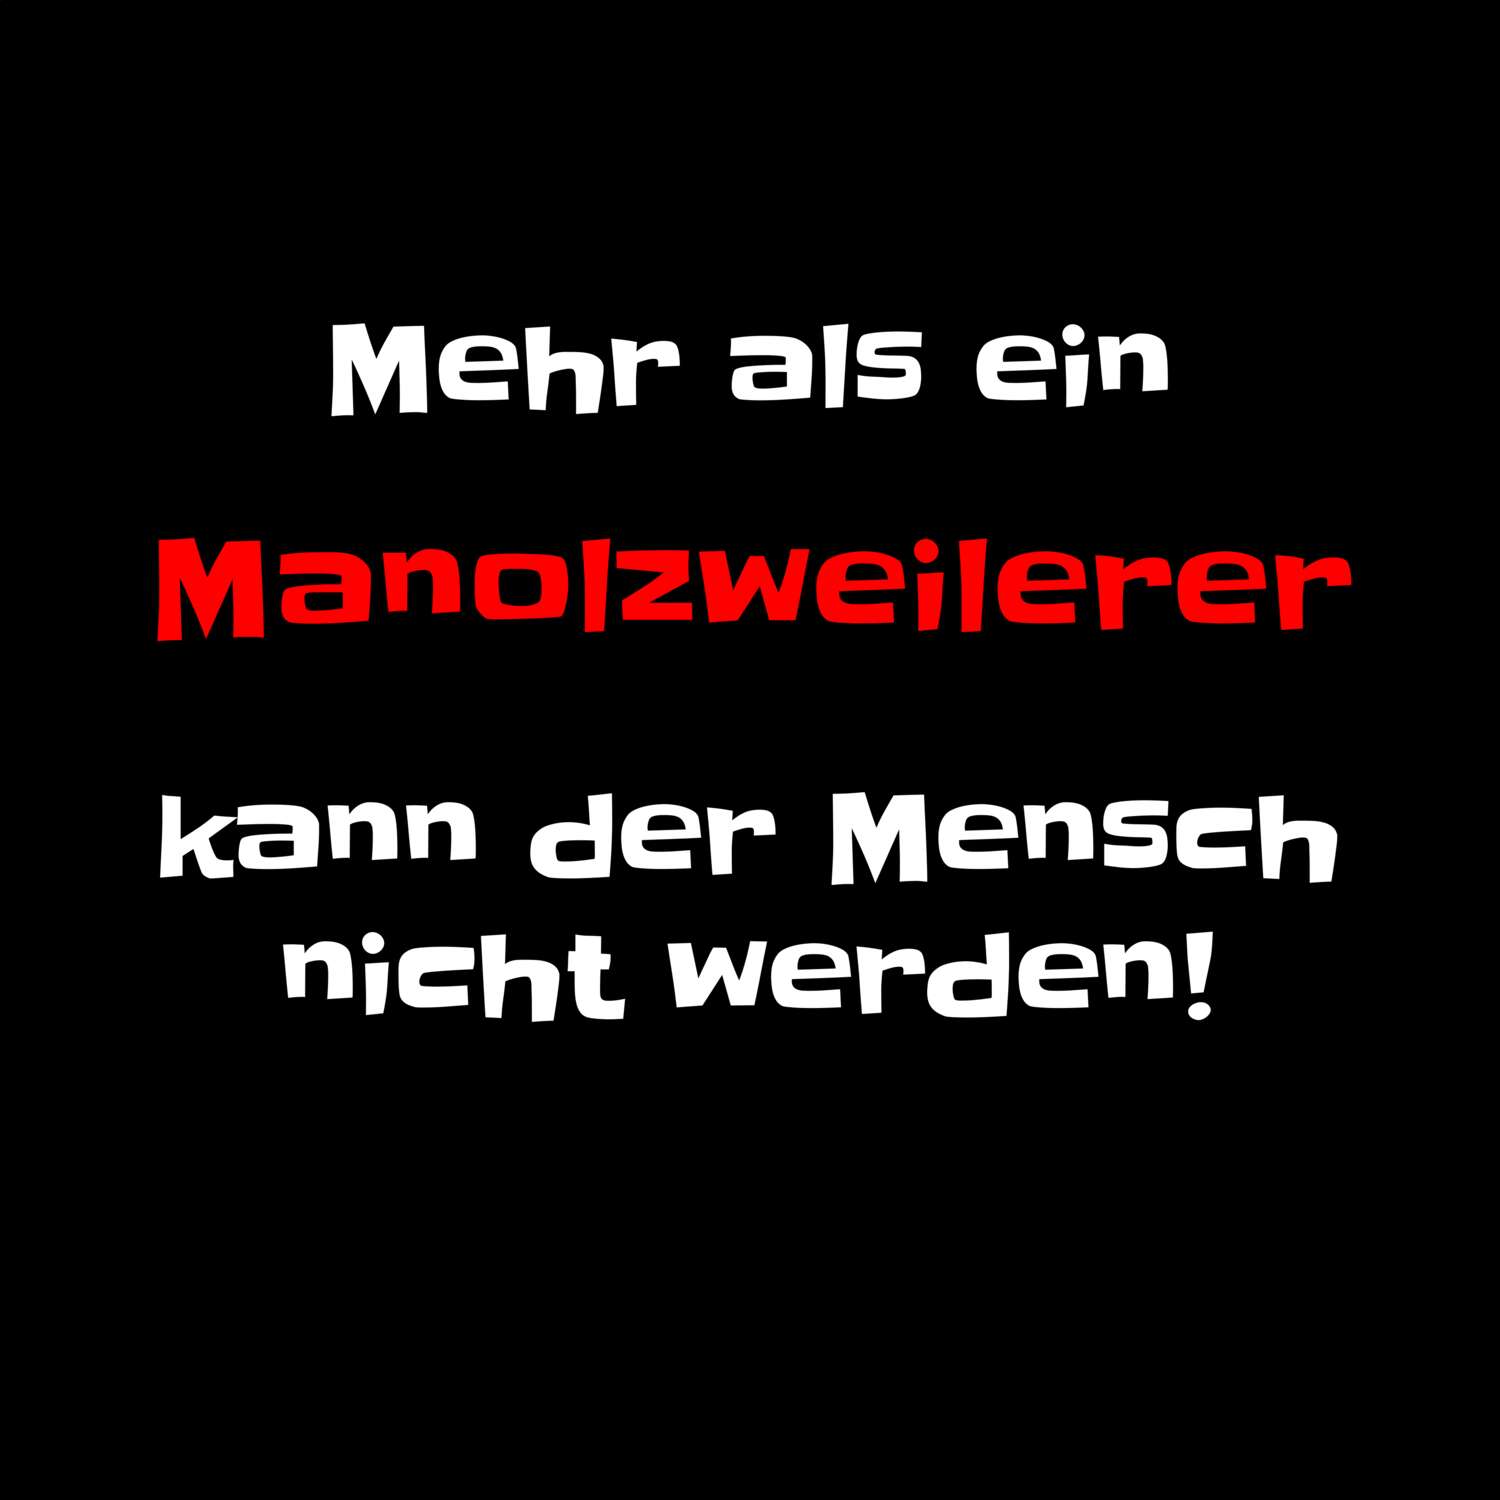 Manolzweiler T-Shirt »Mehr als ein«